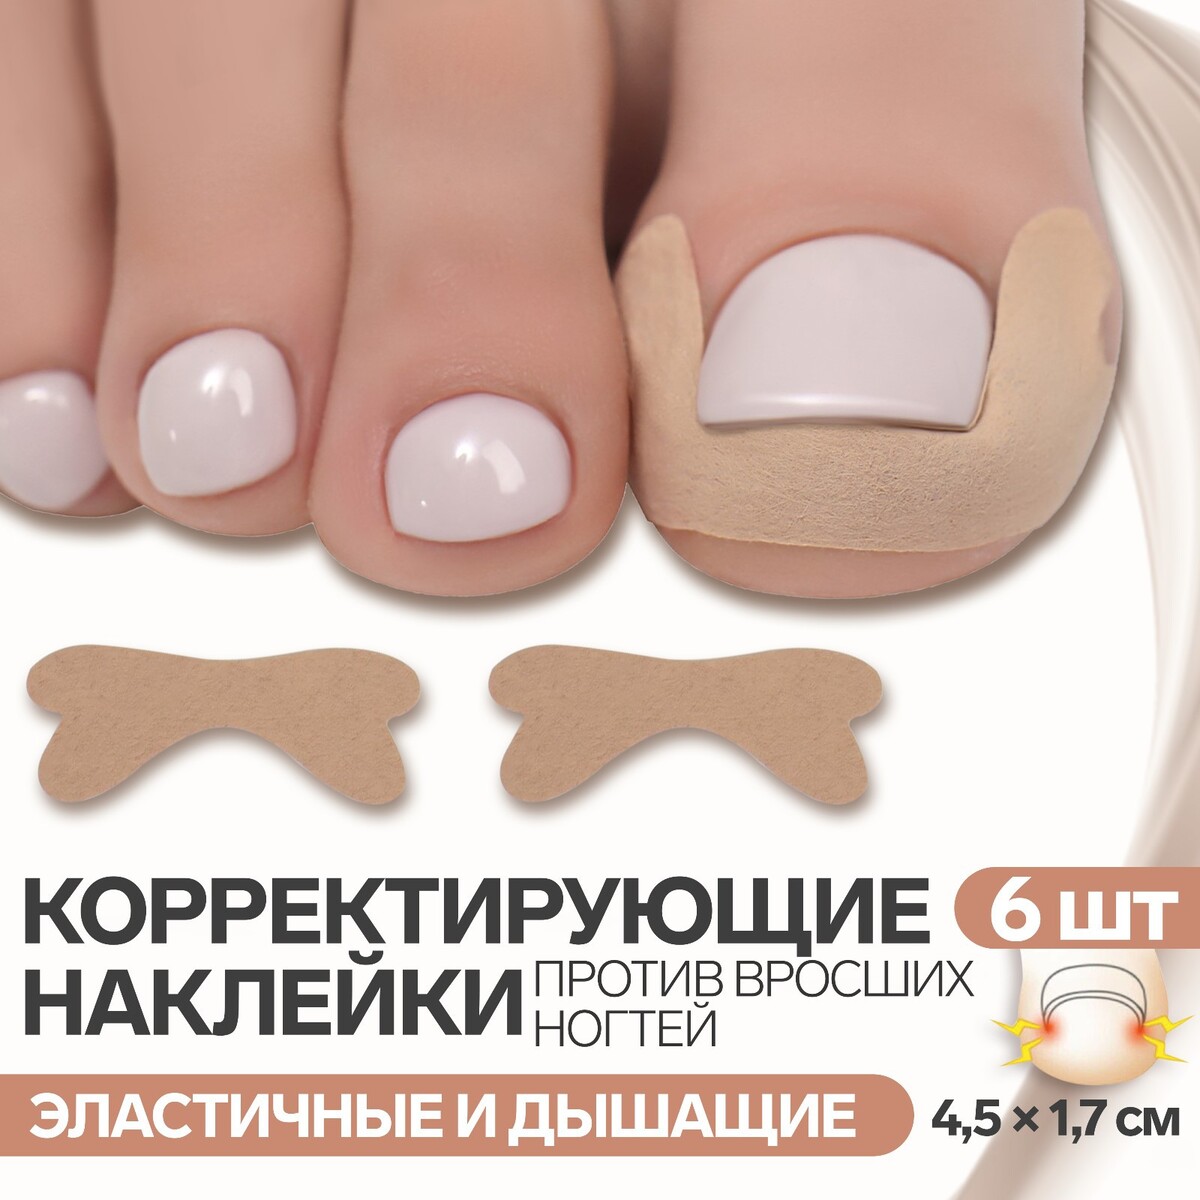 Наклейки против вросших ногтей, 6 шт, 4,5 × 1,7 см, цвет бежевый средство для ногтей против желтизны ногтей 9 г